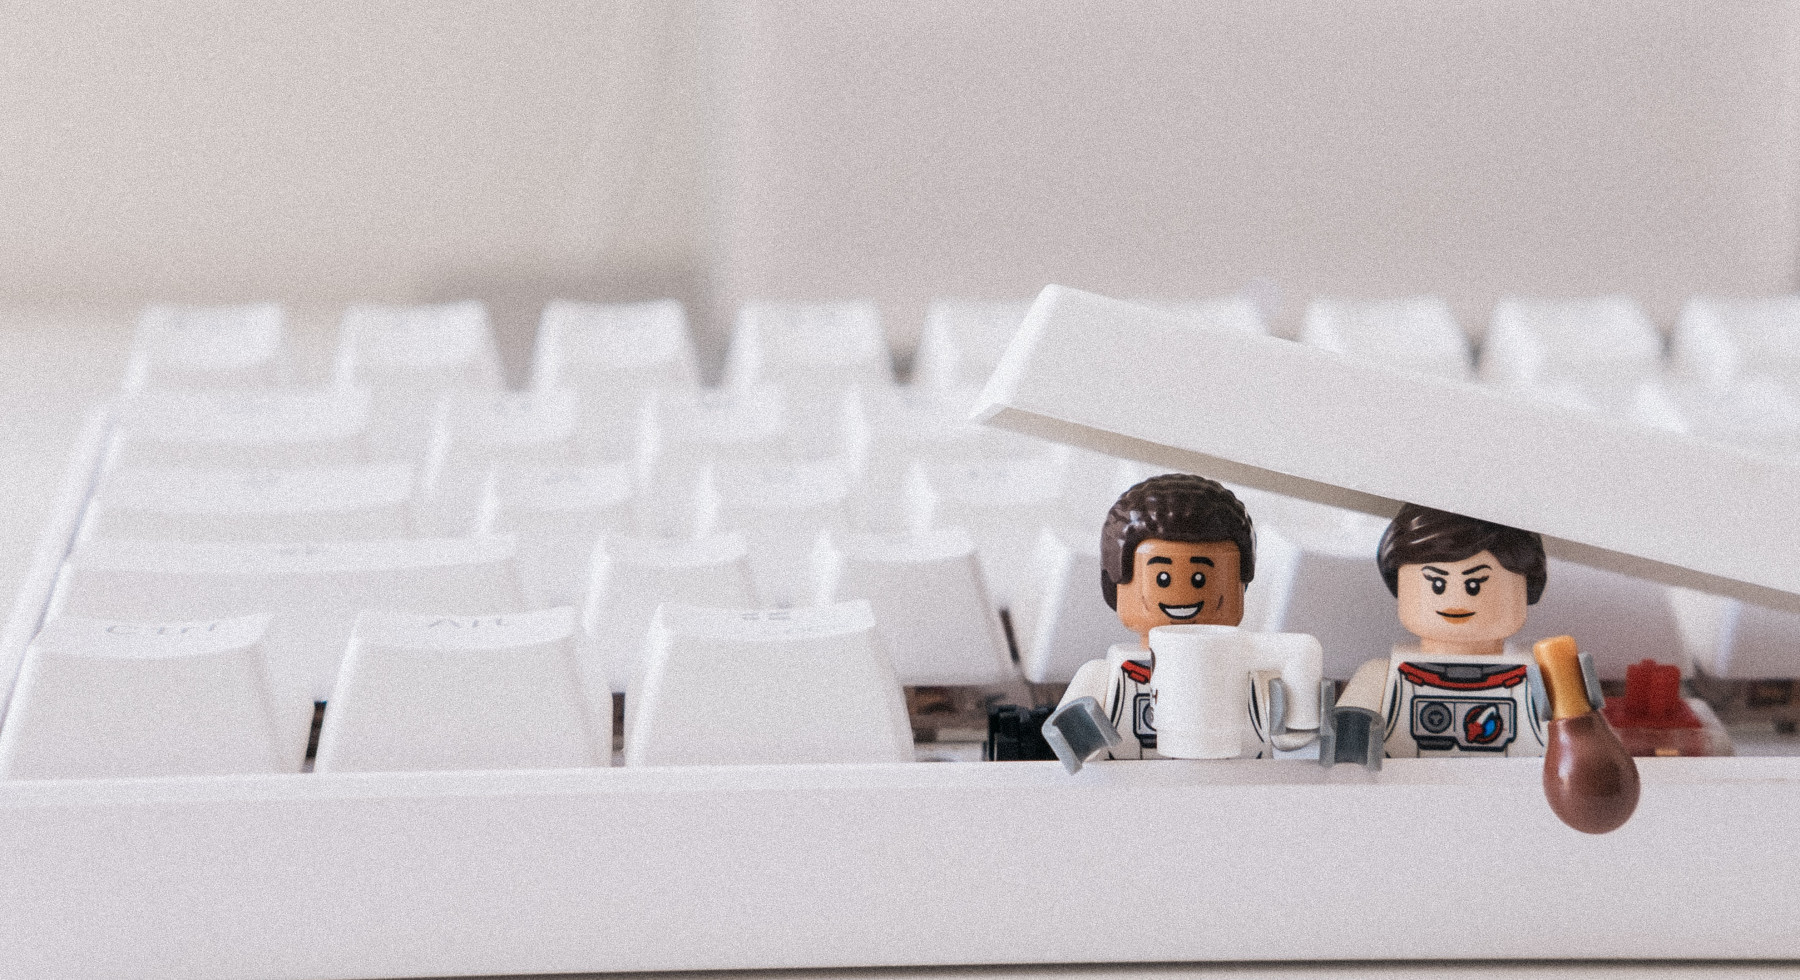 Büroskop Bild von James Pond Unsplash Lego